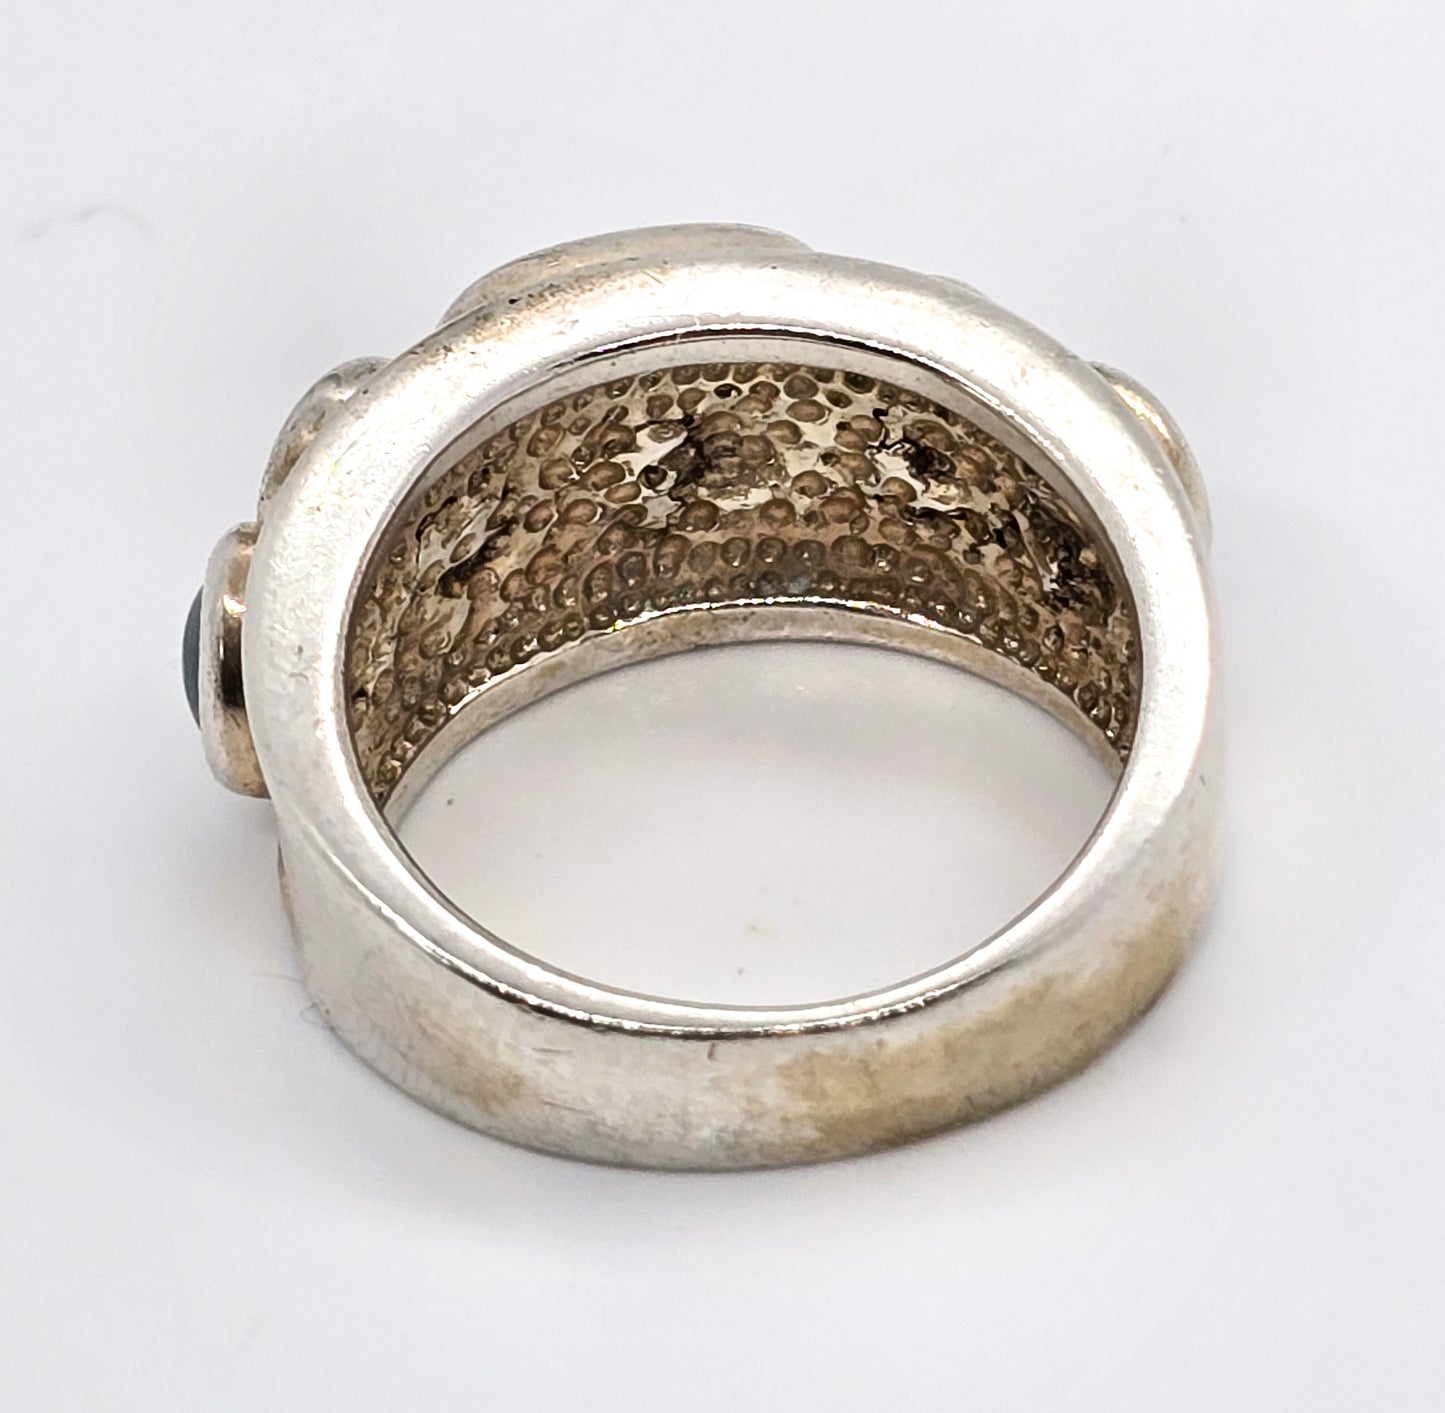 Aquamarine and Amethyst multi gemstone sterling silver cigar band ring size 6 MRF